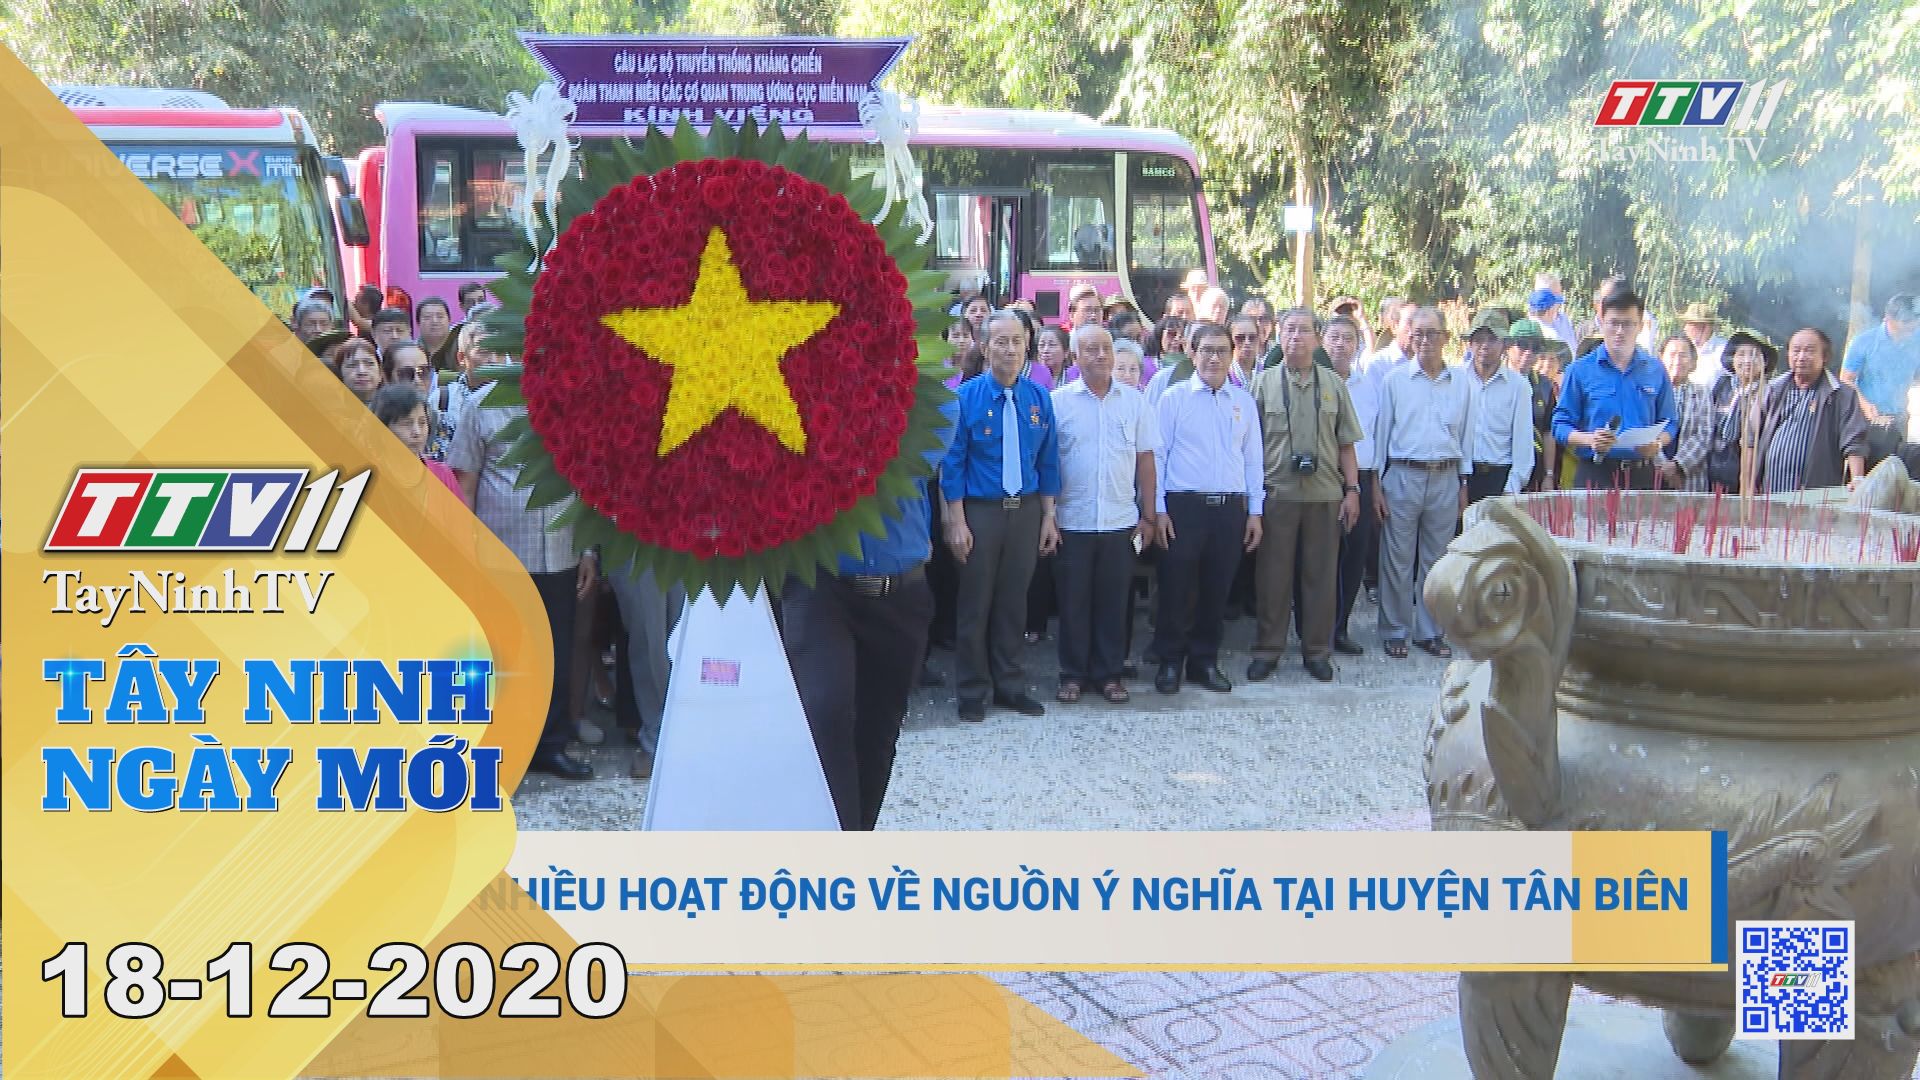 Tây Ninh Ngày Mới 18-12-2020 | Tin tức hôm nay | TayNinhTV